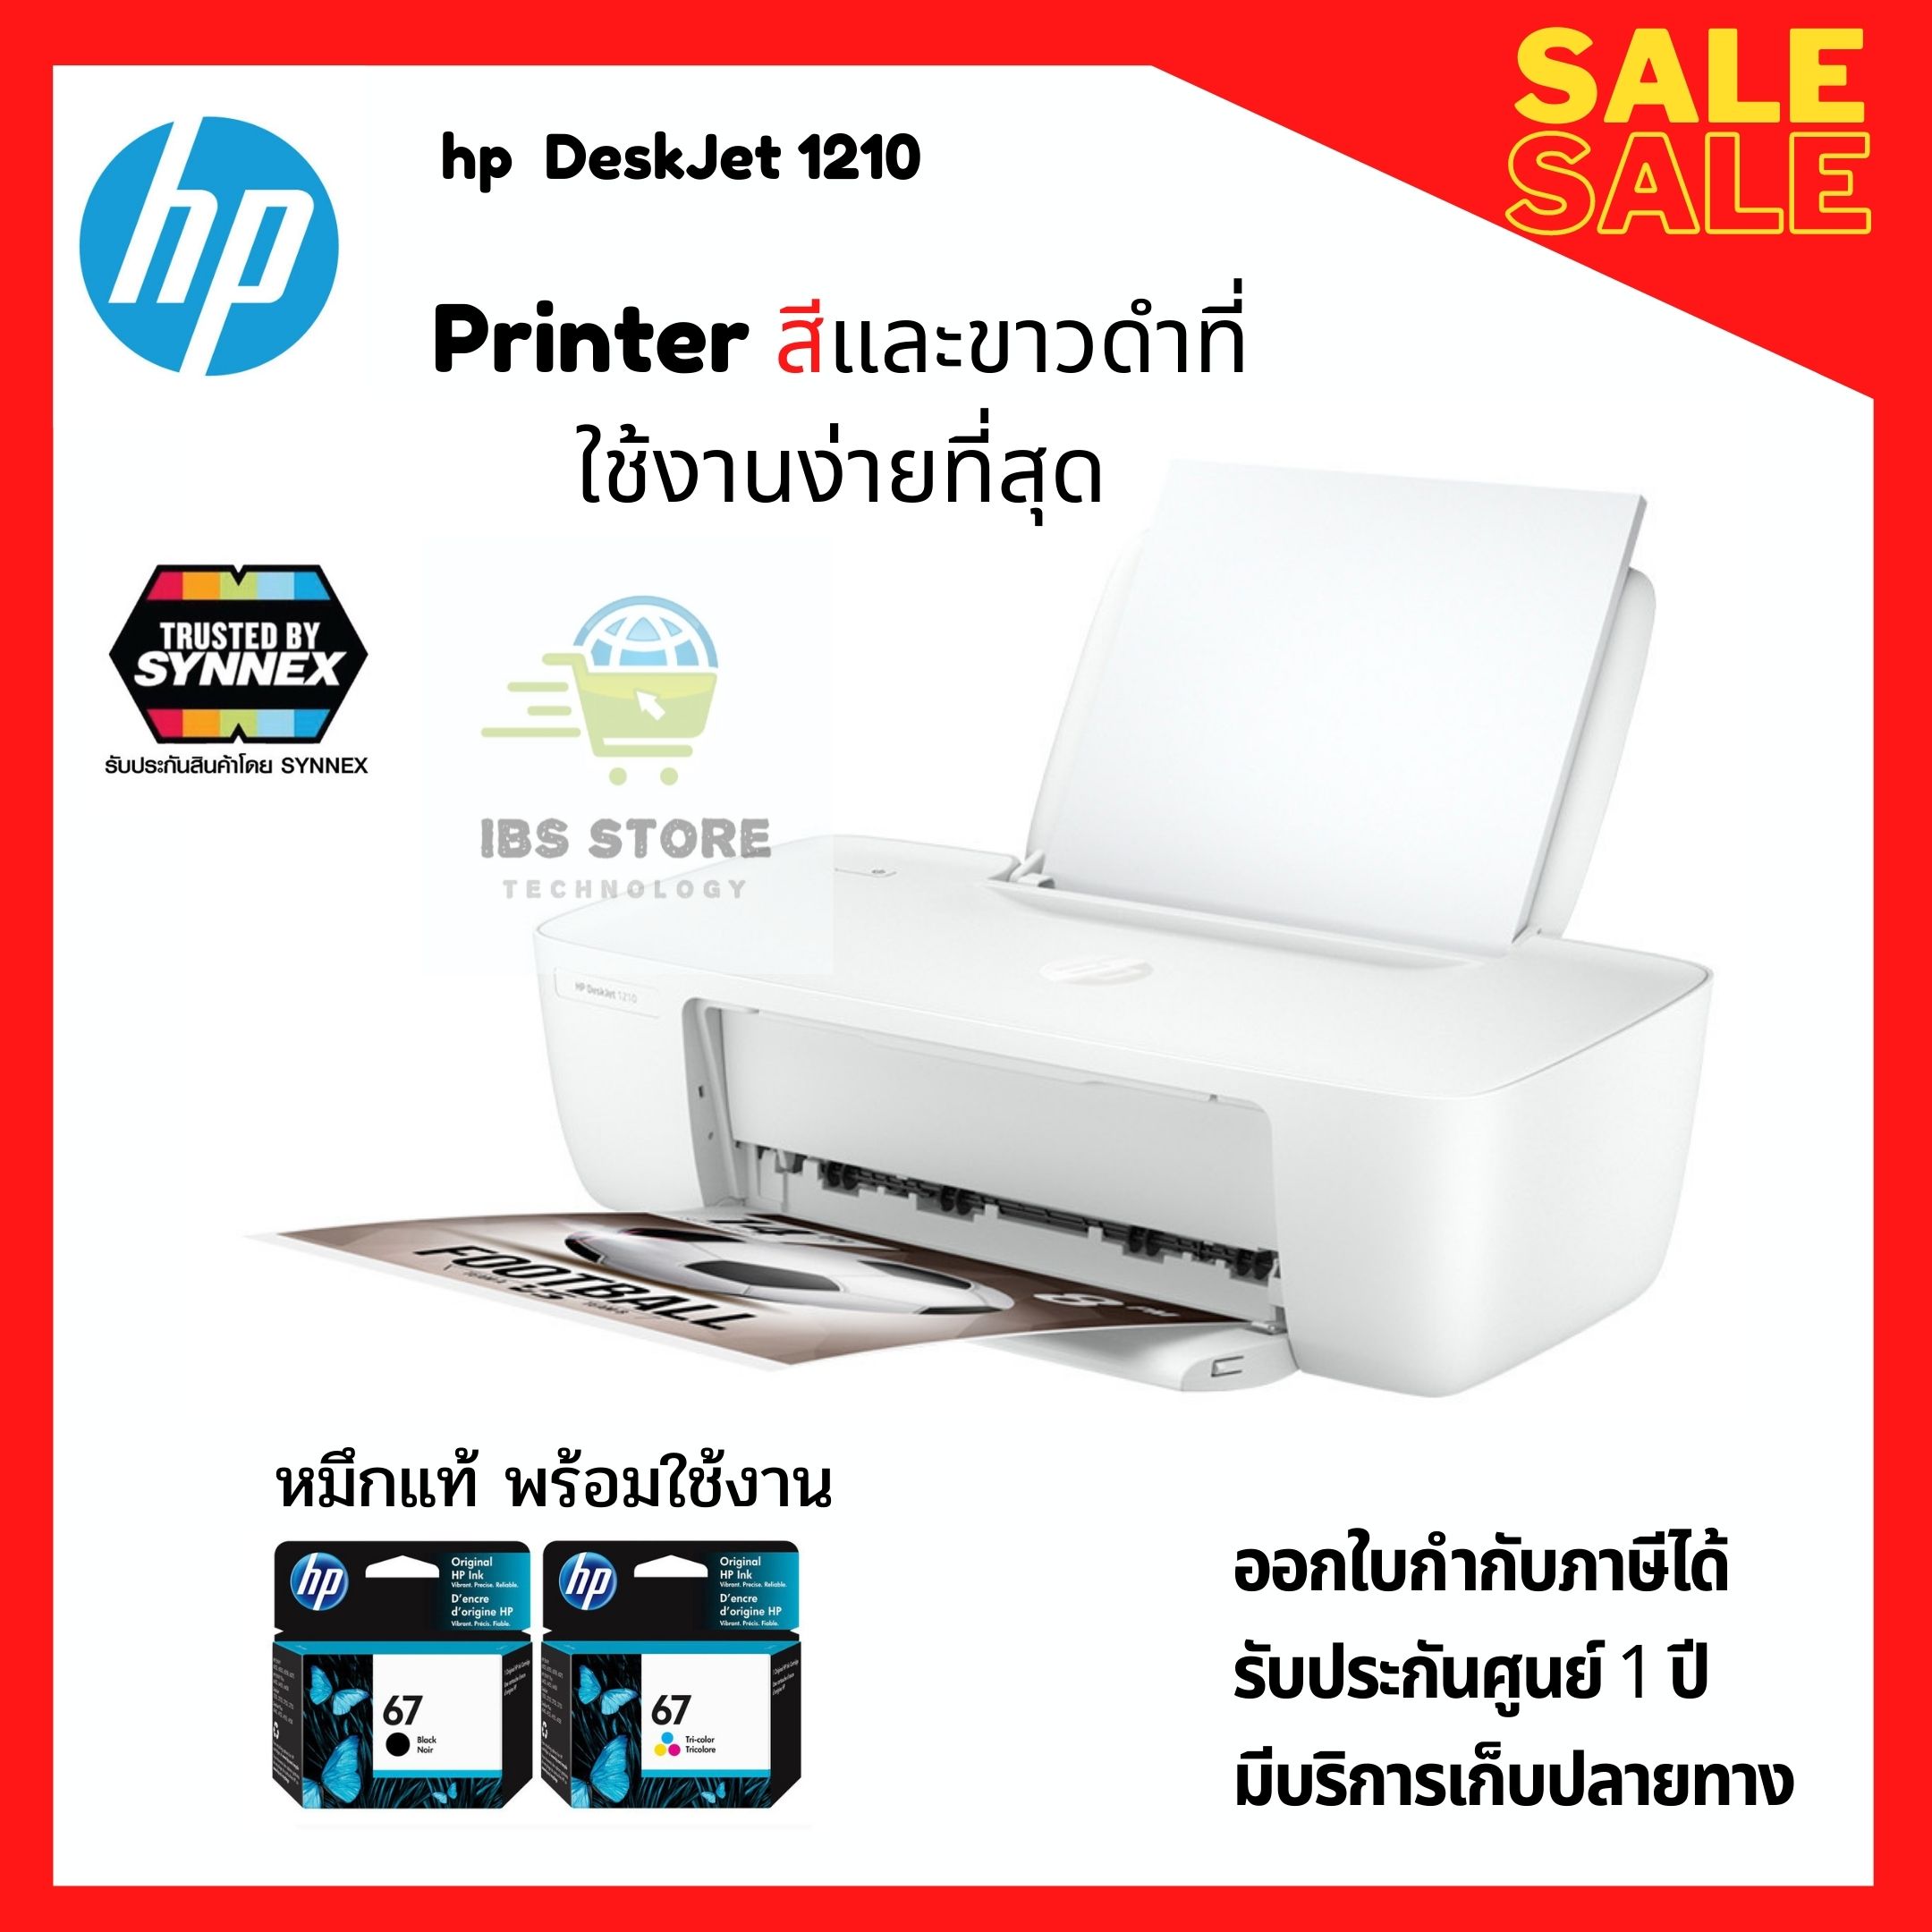 พร้อมส่ง ส่งด่วนHP DeskJet Ink 1210 Printer รุ่นใหม่ปี2020 เครื่องพิมพ์คุณภาพระดับมาตรฐานสากล สามารถรองรับขนาดกระดาษได้ถึงA4 ประกันศูนย์1ปี